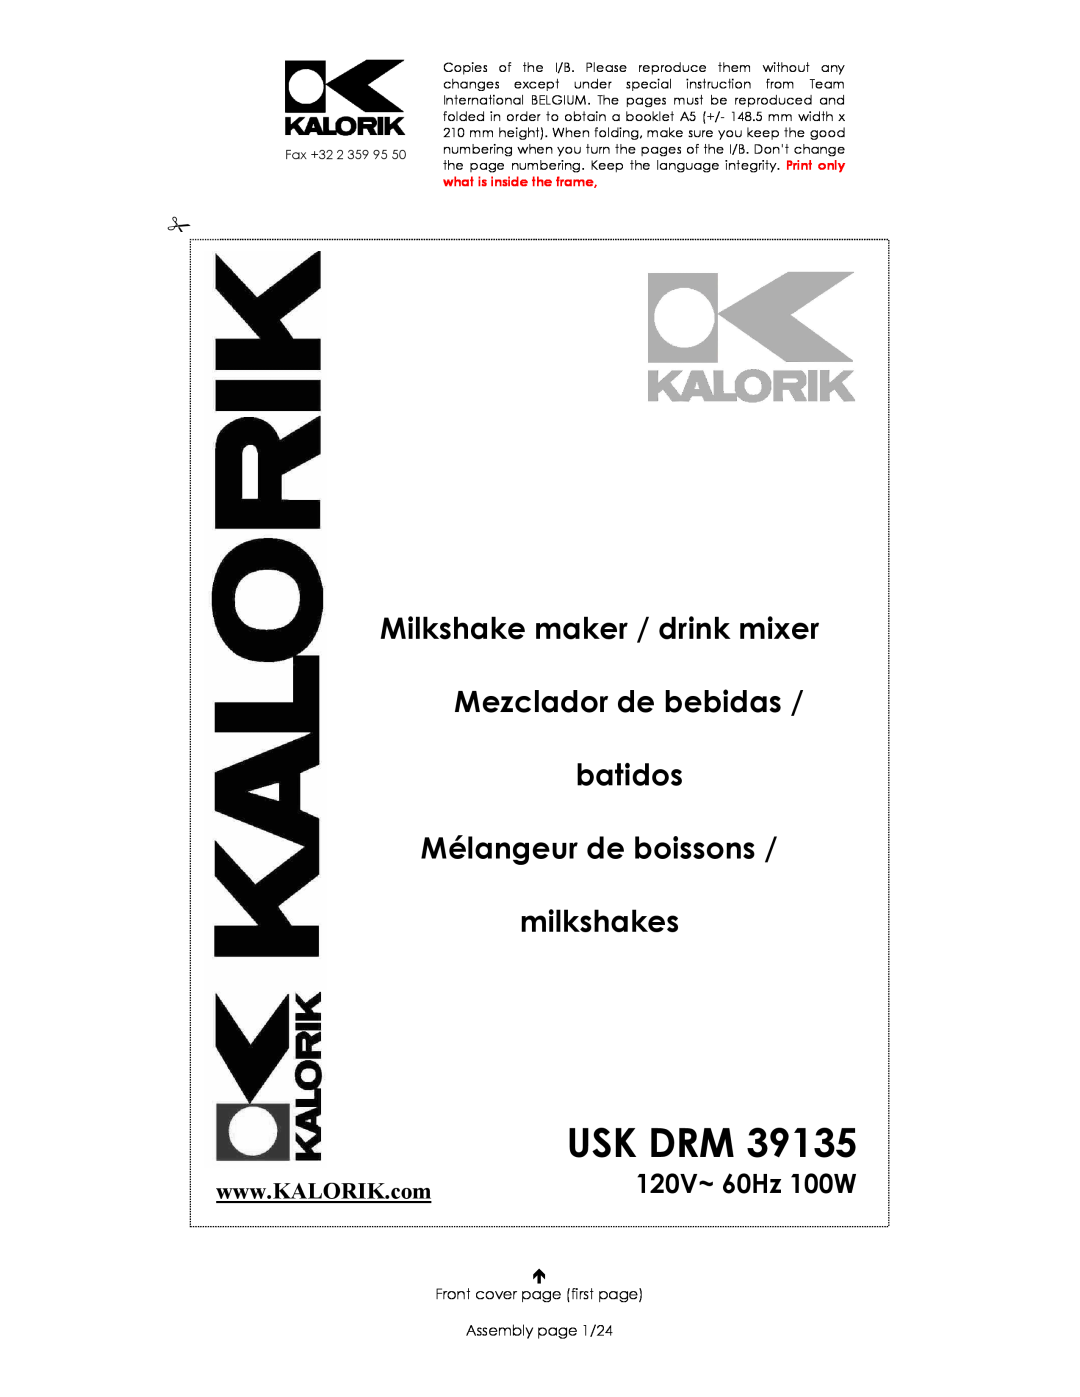 Kalorik USK DRM 39135 manual Usk Drm, 120V~ 60Hz 100W, Milkshake maker / drink mixer Mezclador de bebidas batidos 